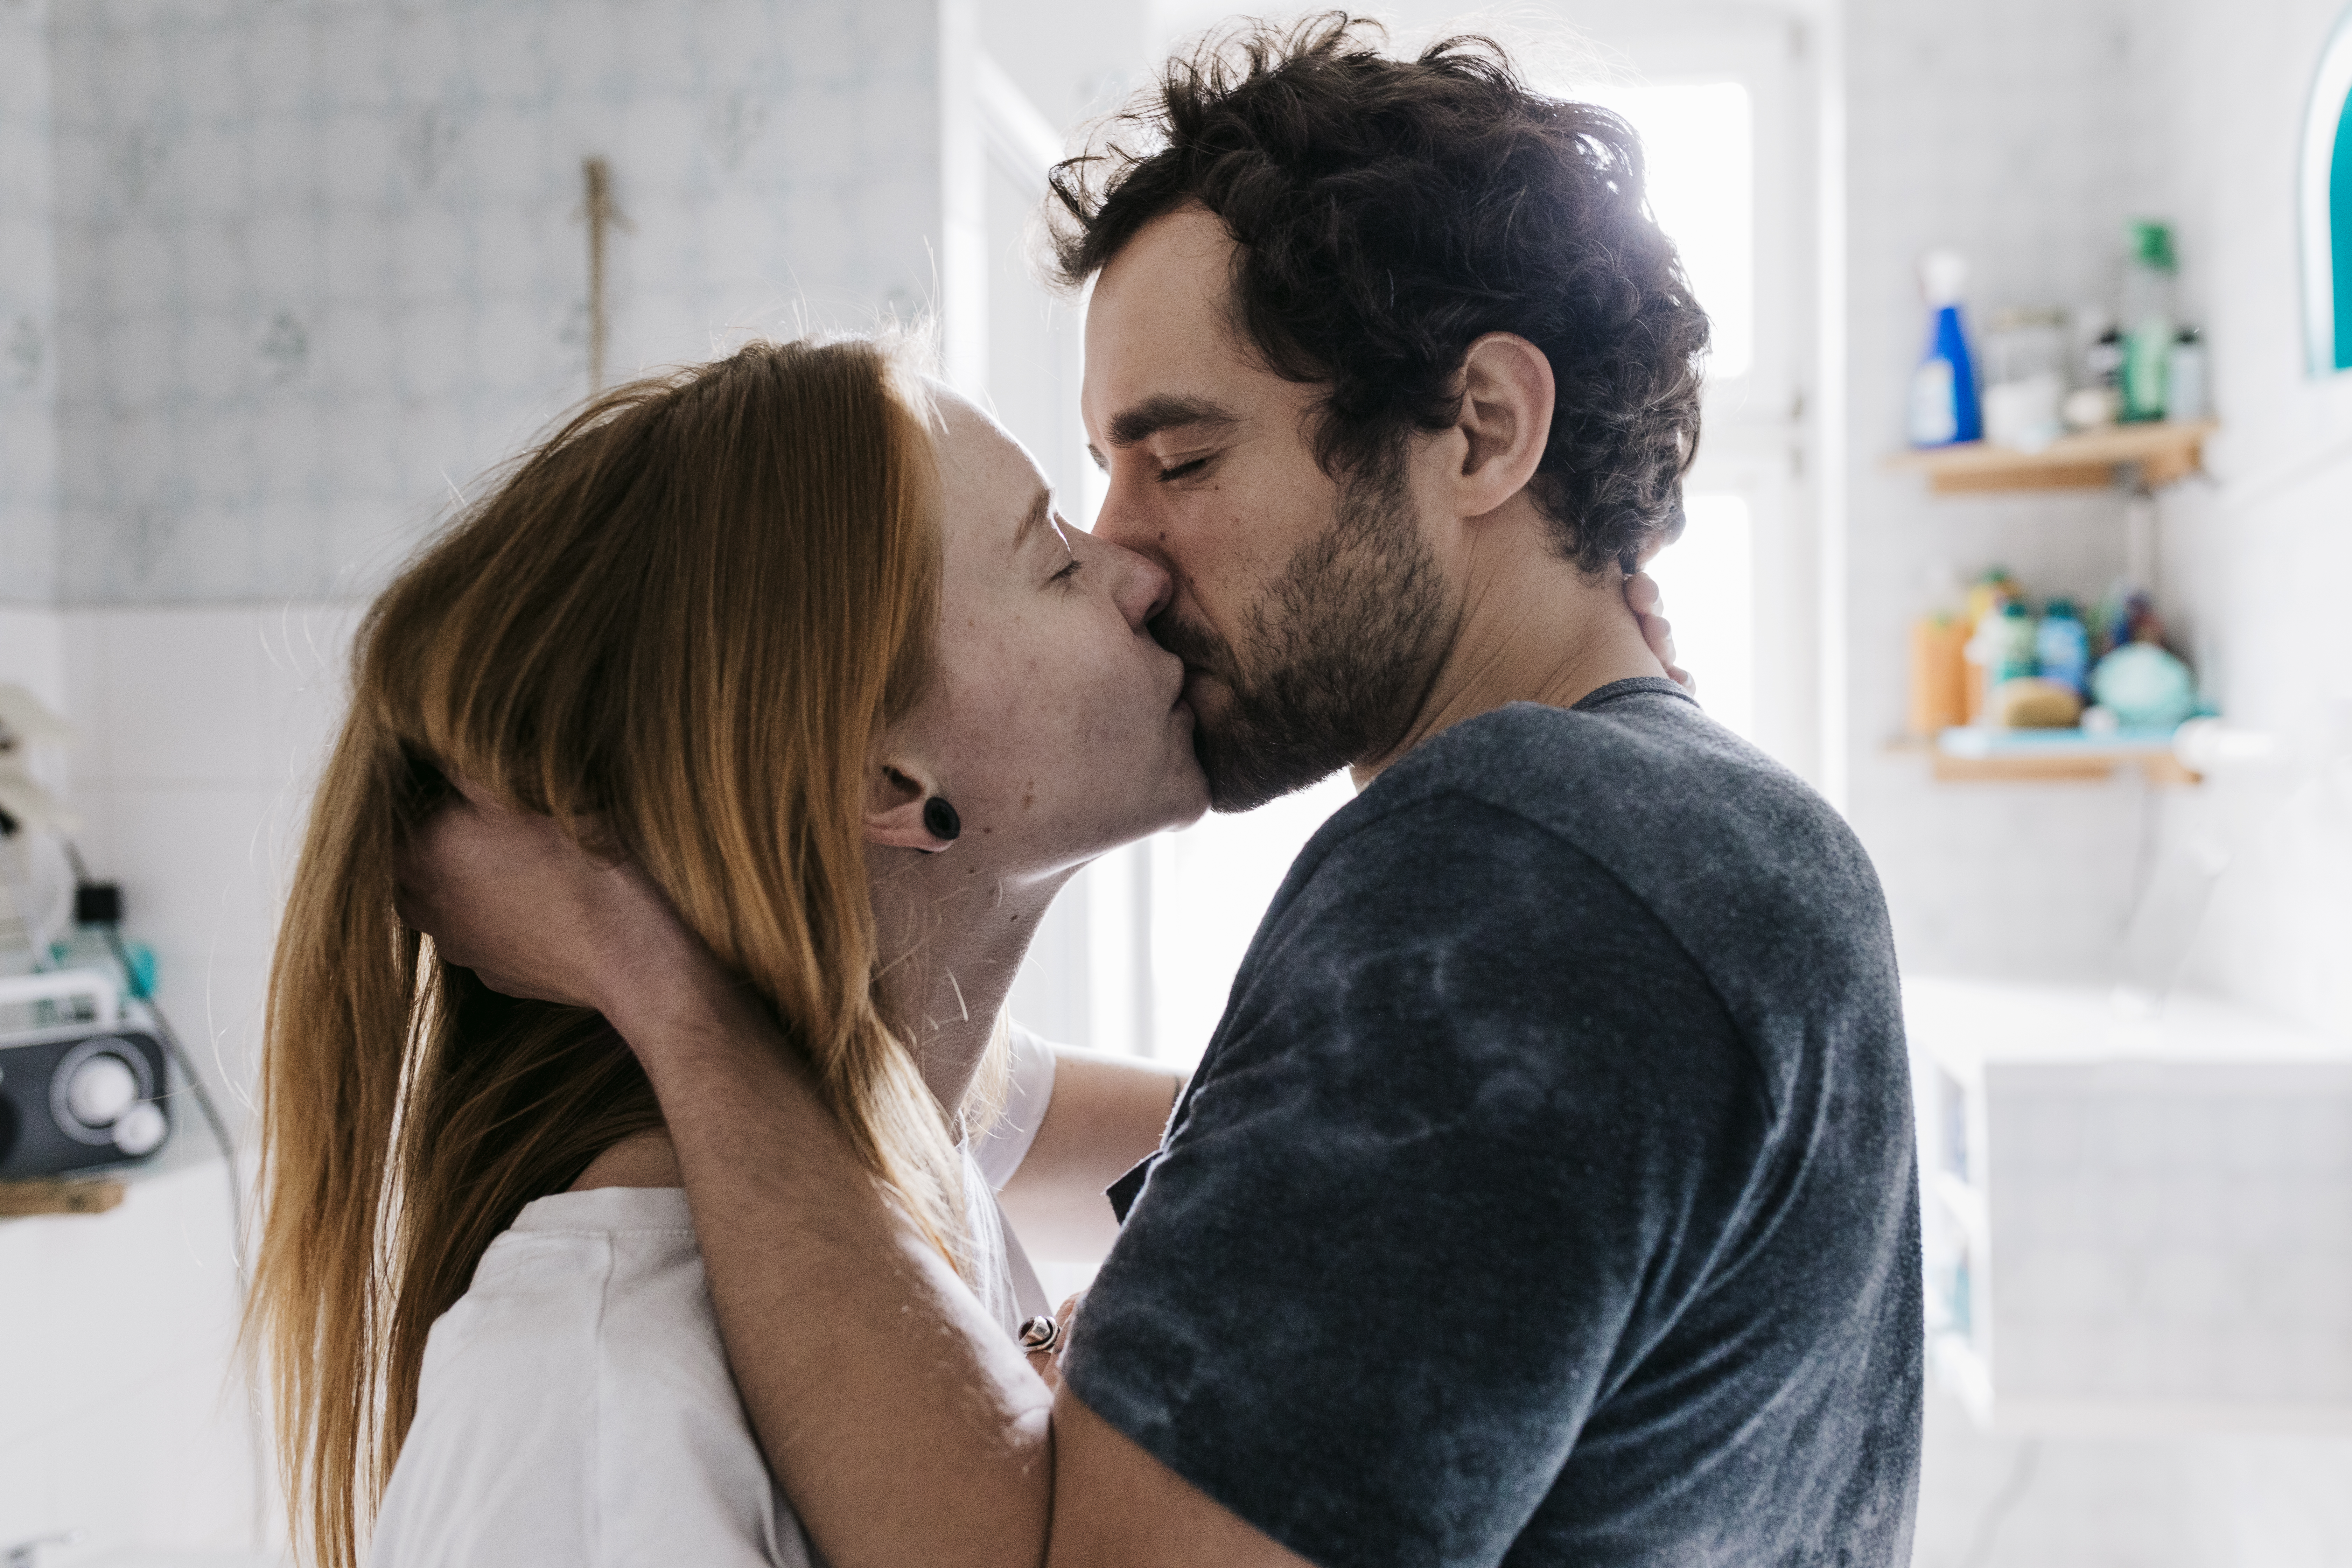 Un homme saisit l'arrière de la tête et les cheveux d'une femme alors qu'ils s'embrassent passionnément les yeux fermés | Source : Getty Images